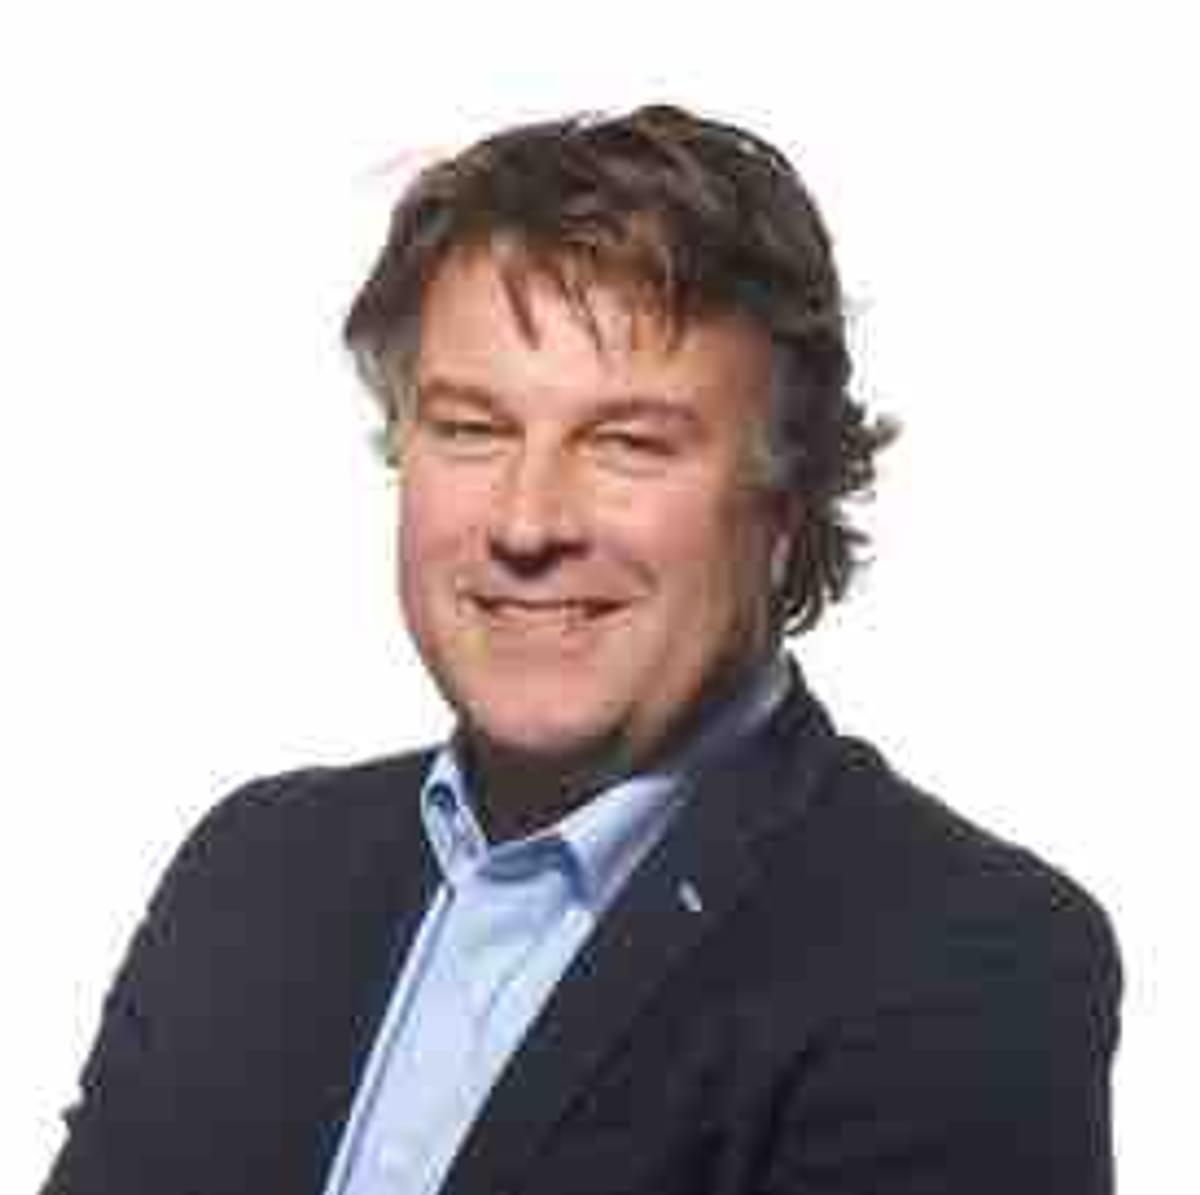 Wytze Rijkmans benoemd tot Sales Director bij ServiceNow image